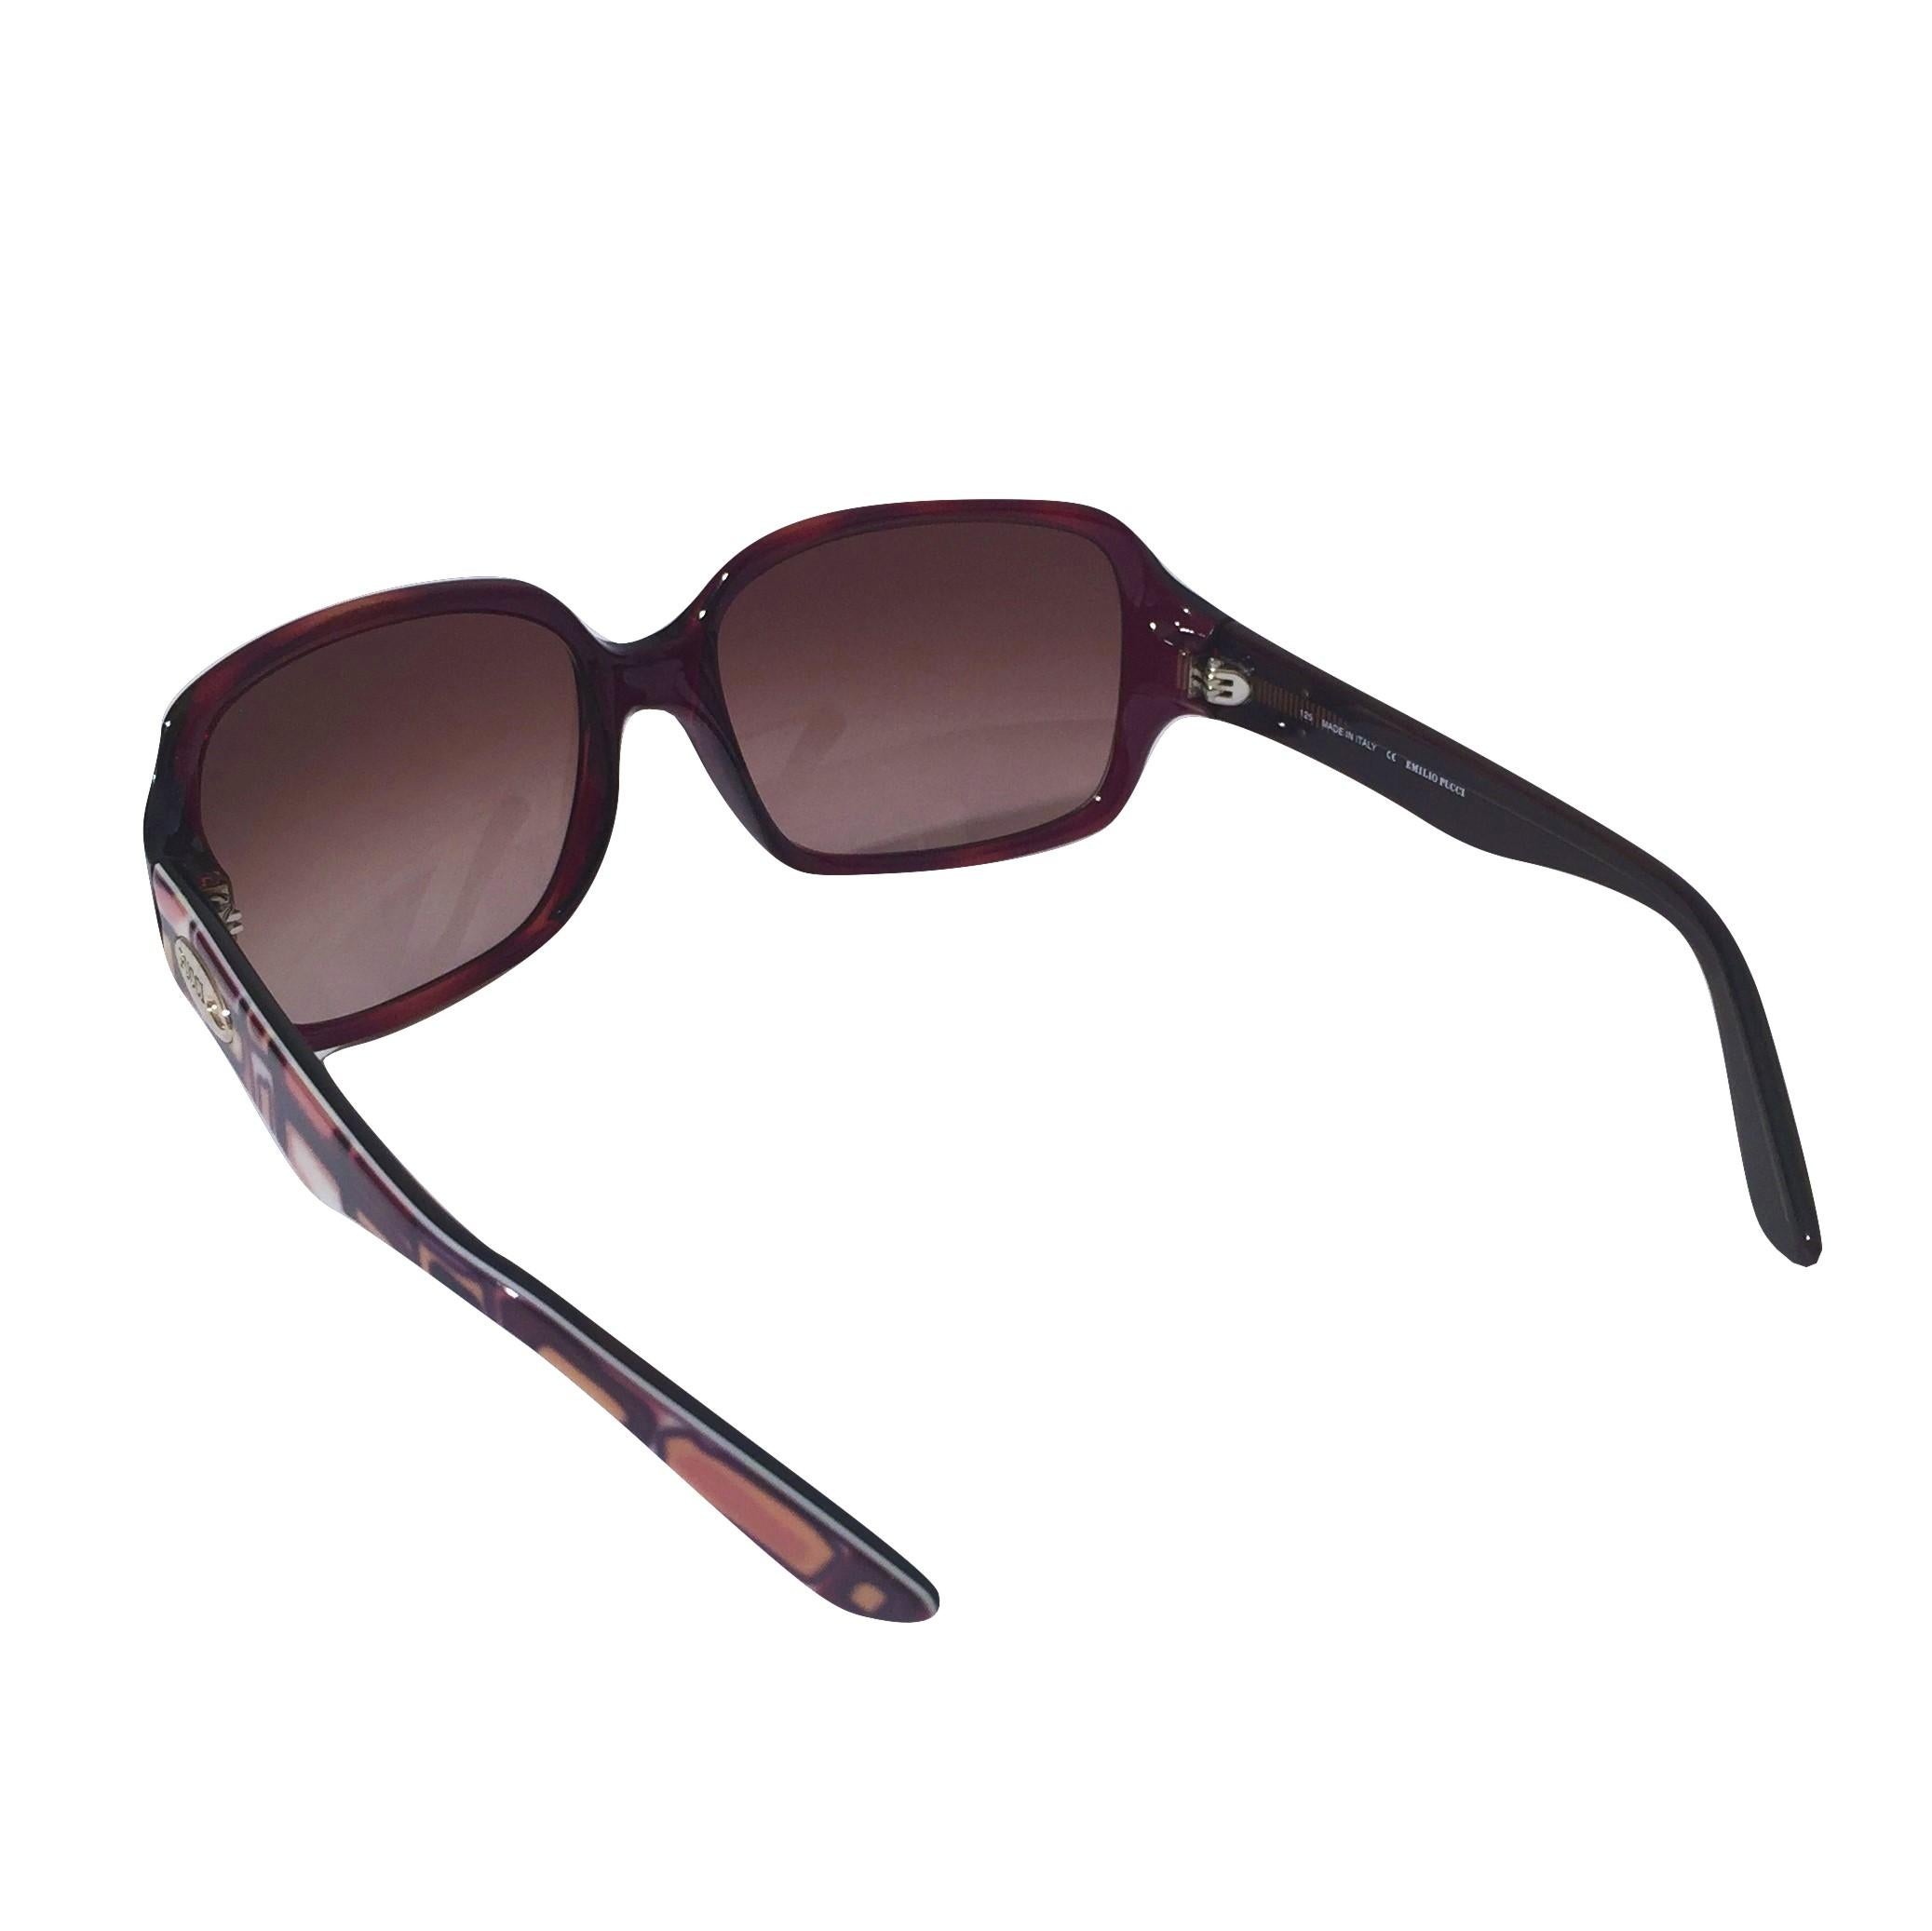 New Emilio Pucci Brown Logo Sunglasses With Case & Box 4